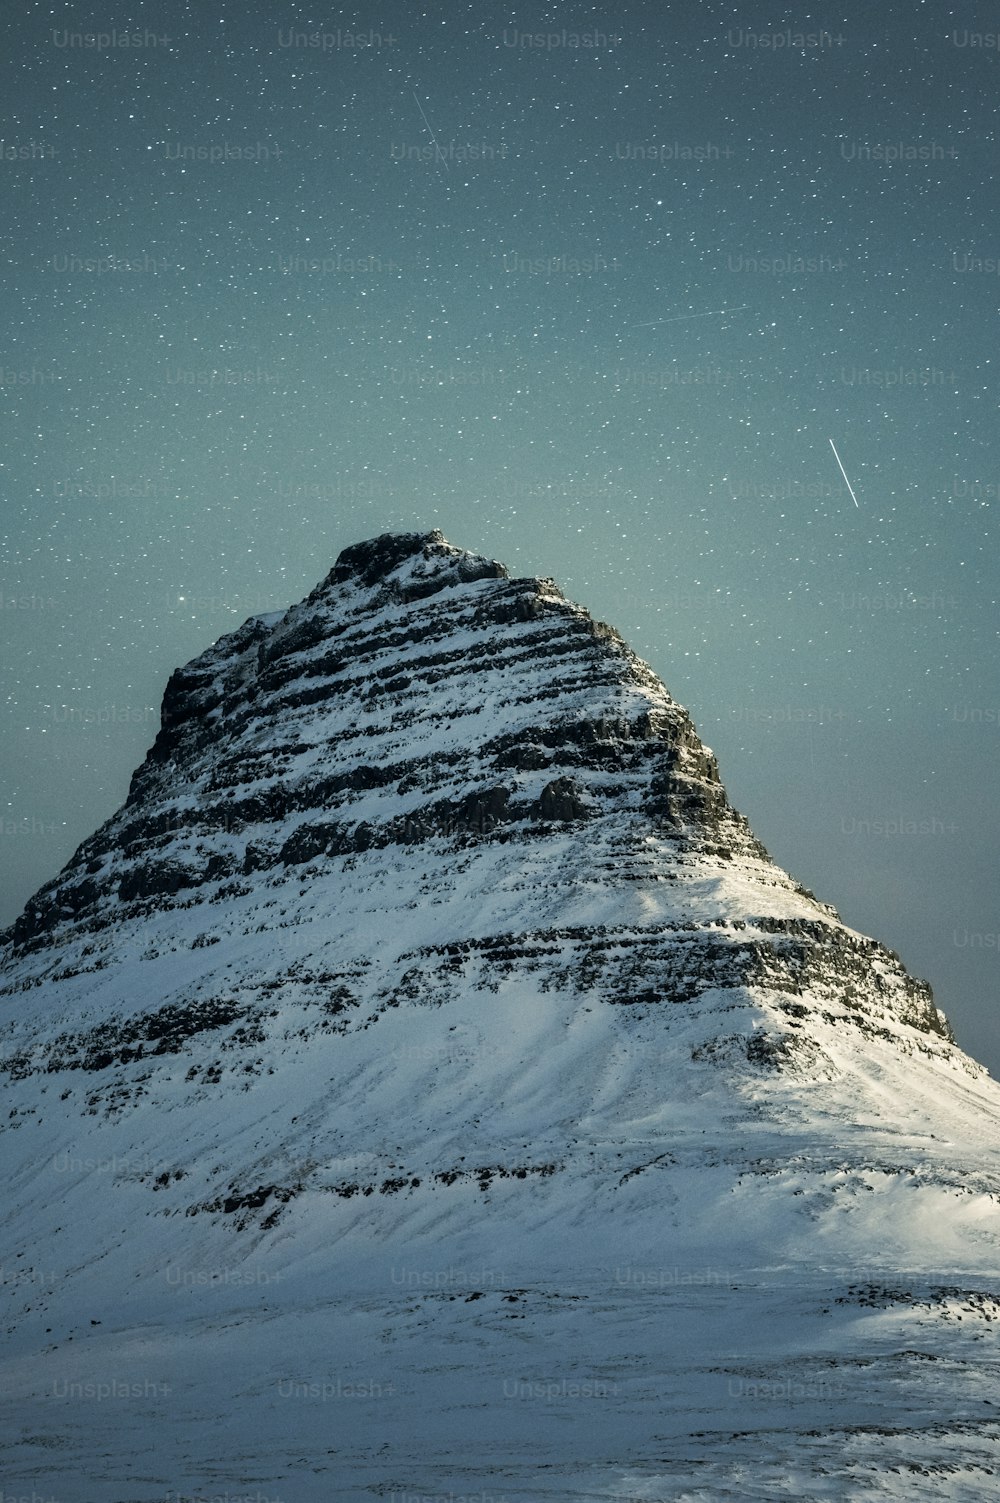 Une montagne enneigée sous un ciel étoilé